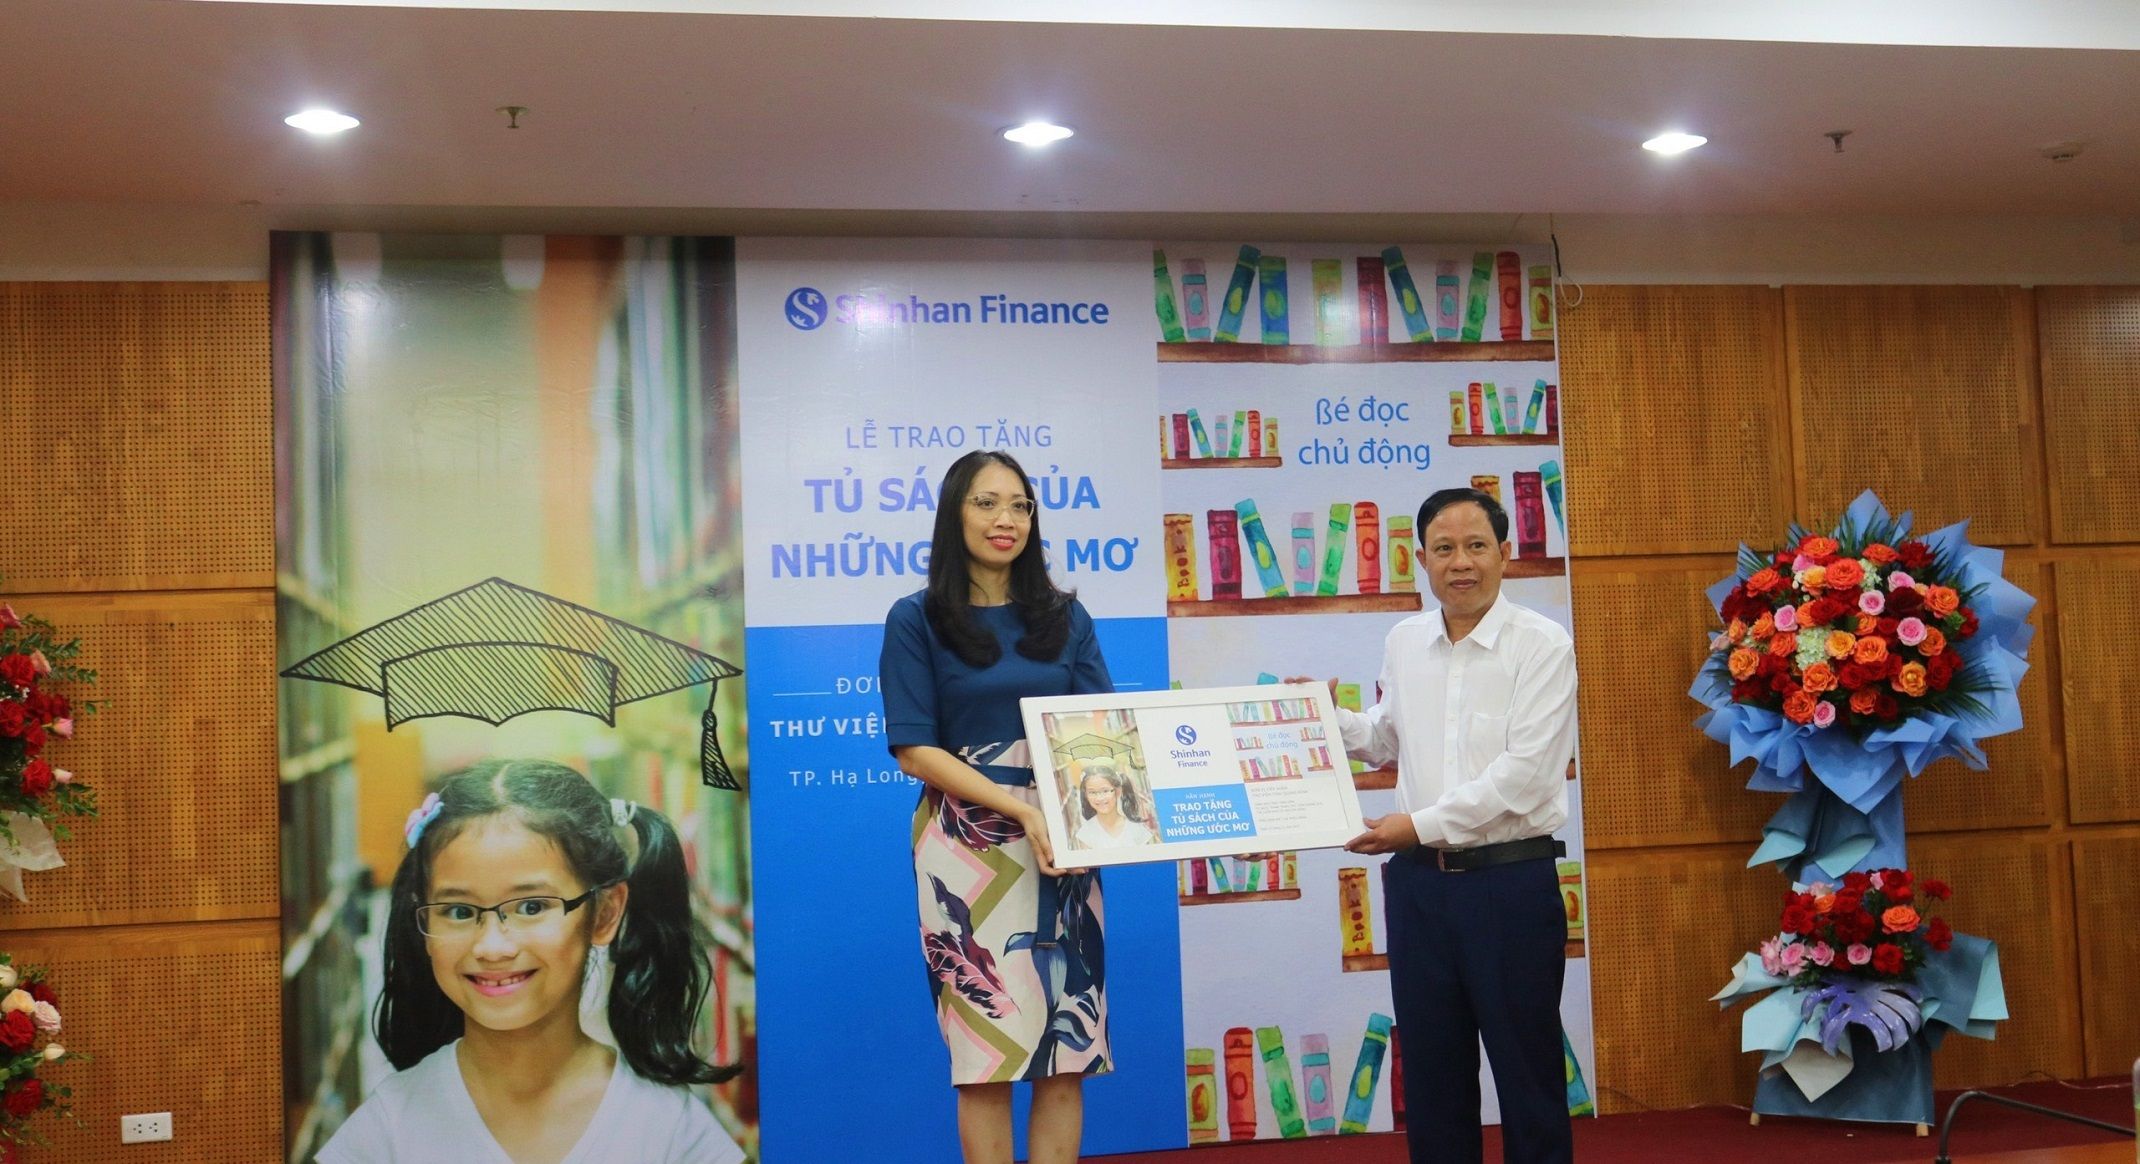 Đại diện Ban giám đốc Shinhan Finance trao tặng tủ sách cho thư viện tỉnh Quảng Ninh